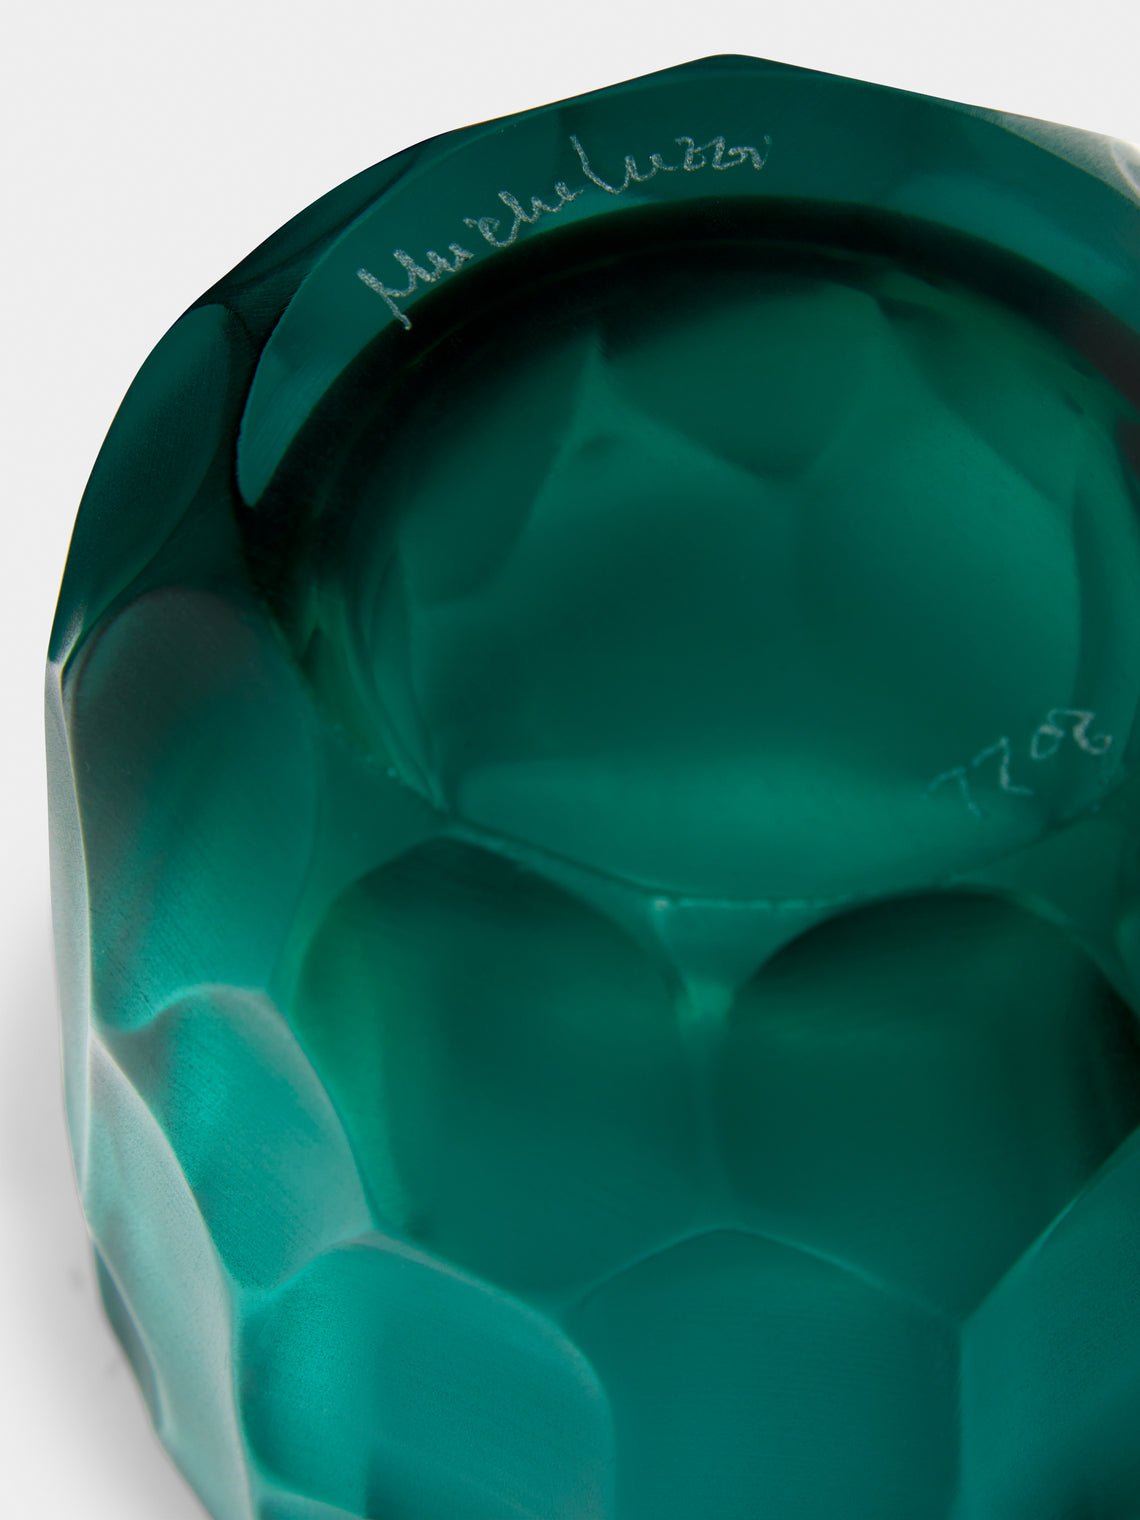 Micheluzzi Glass - Rullo Acqua Hand-Blown Murano Glass Vase - Teal - ABASK